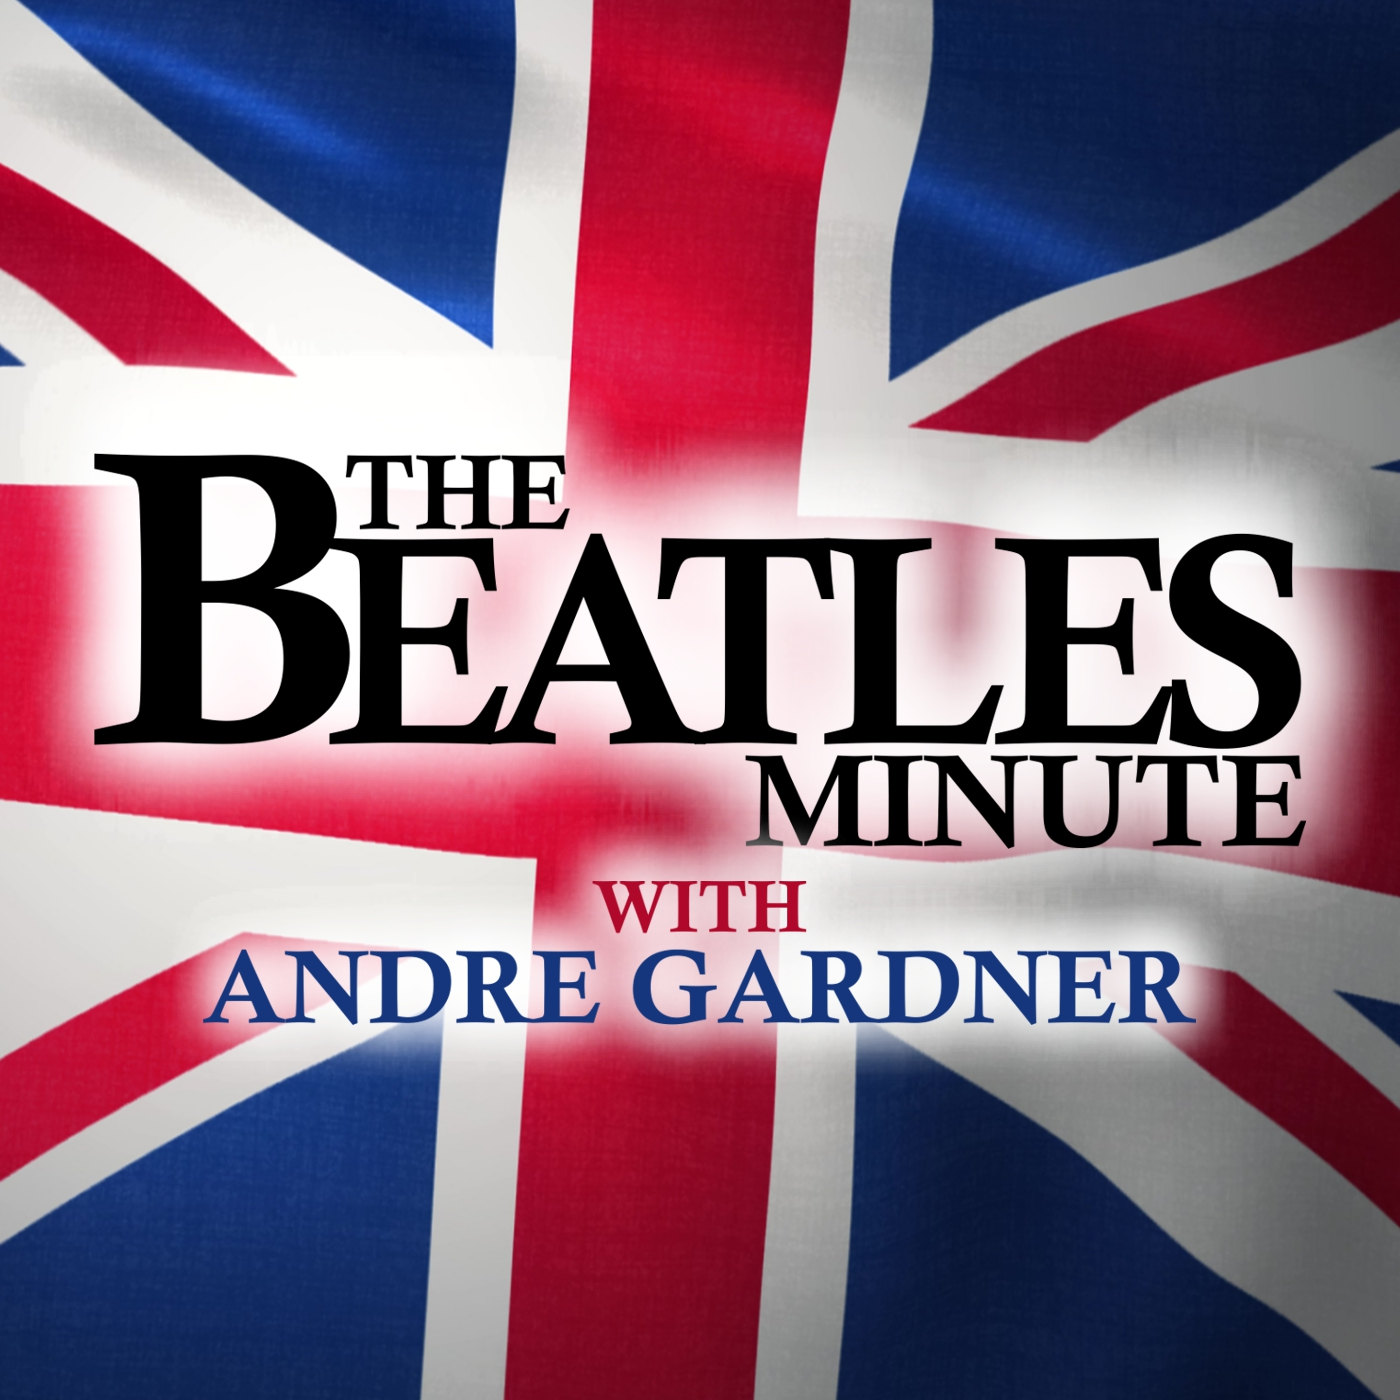 Beatles Minute - week of September 6, 2021